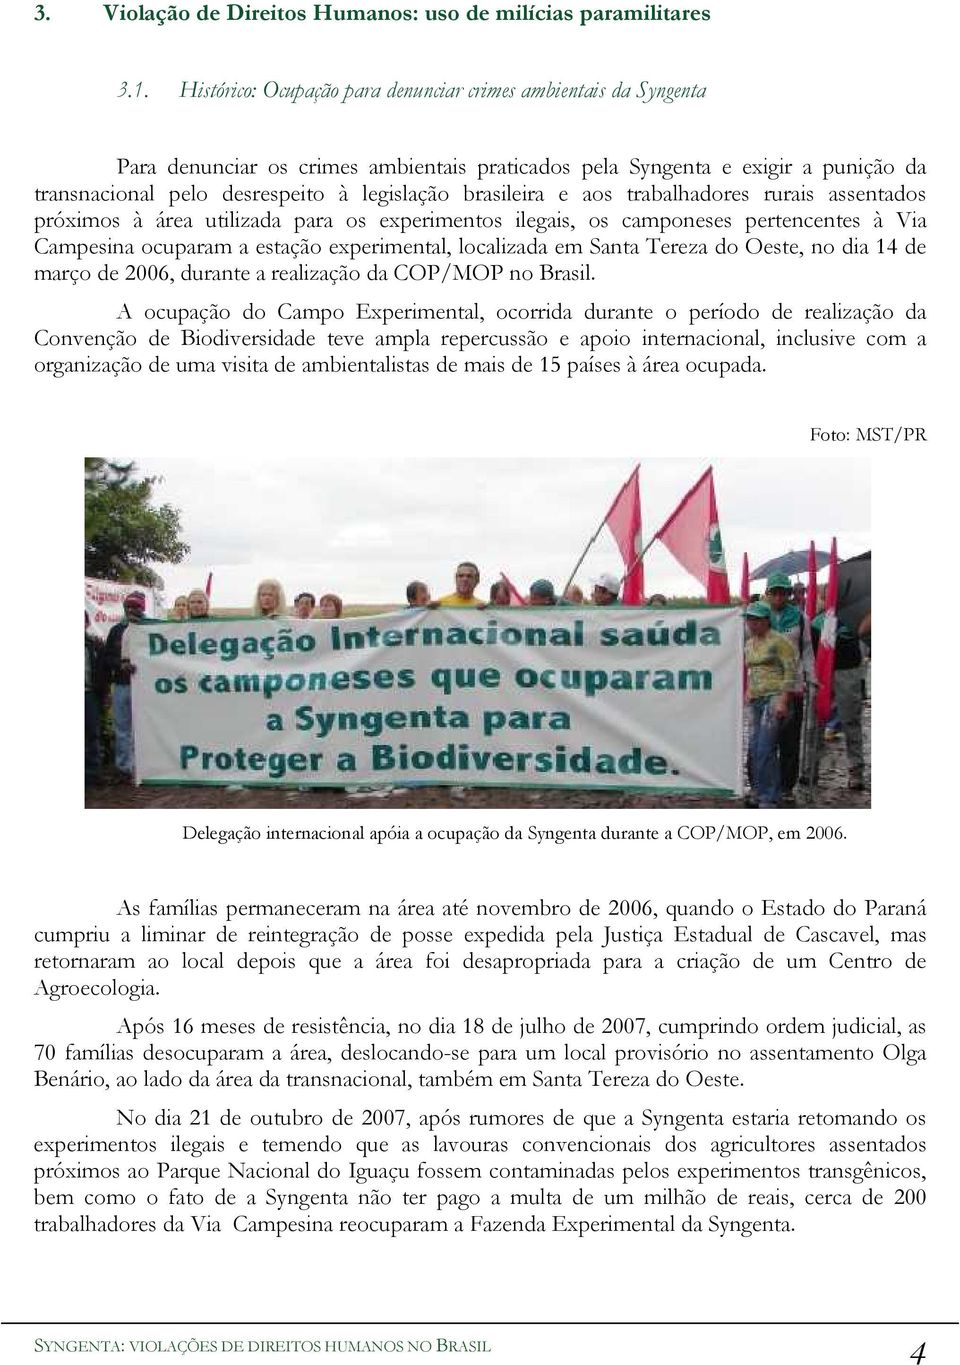 brasileira e aos trabalhadores rurais assentados próximos à área utilizada para os experimentos ilegais, os camponeses pertencentes à Via Campesina ocuparam a estação experimental, localizada em